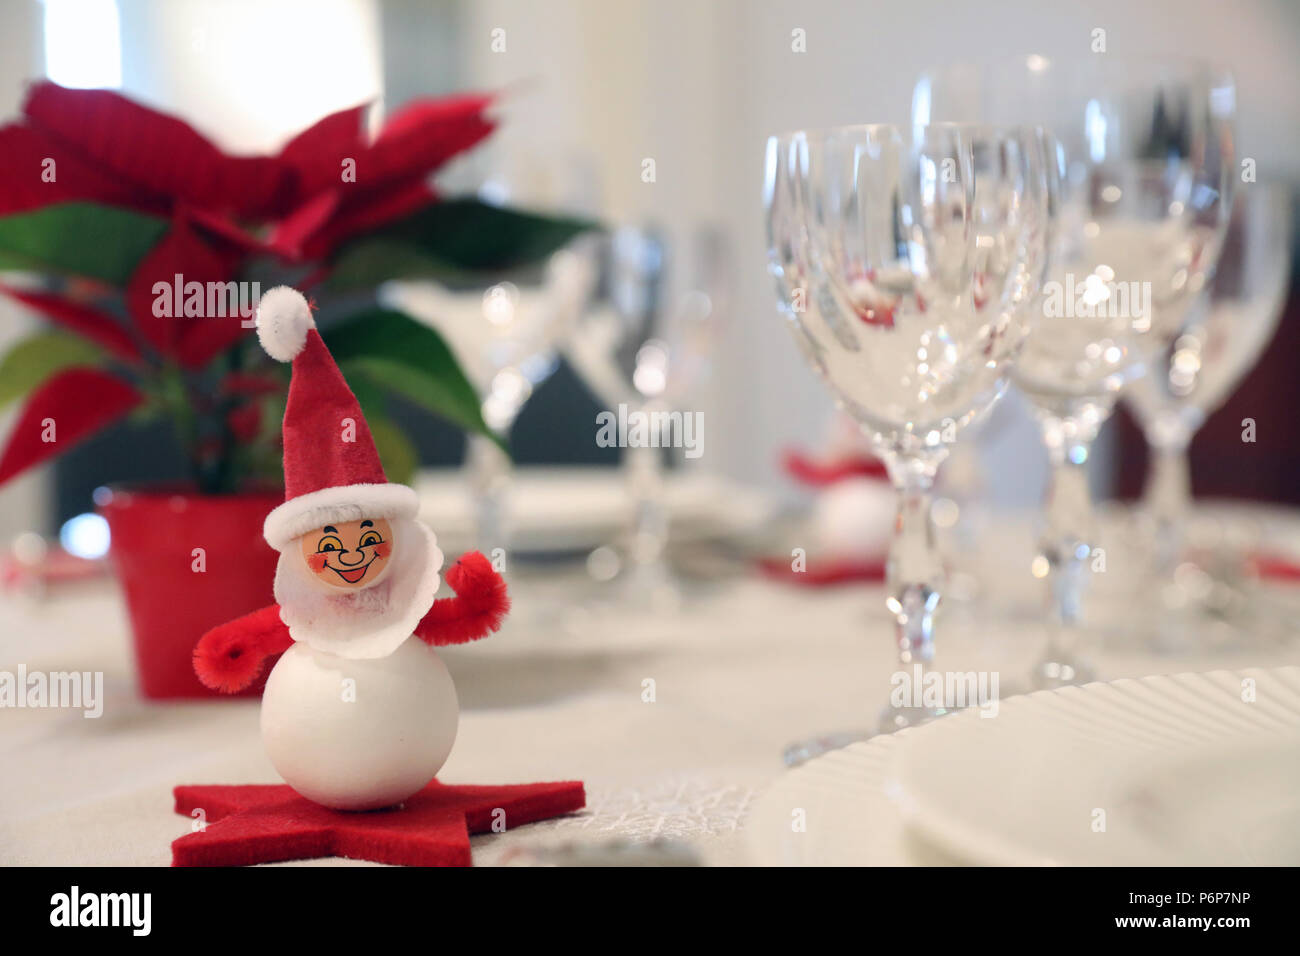 Weihnachtsschmuck am Esstisch. Genf. Die Schweiz. Stockfoto